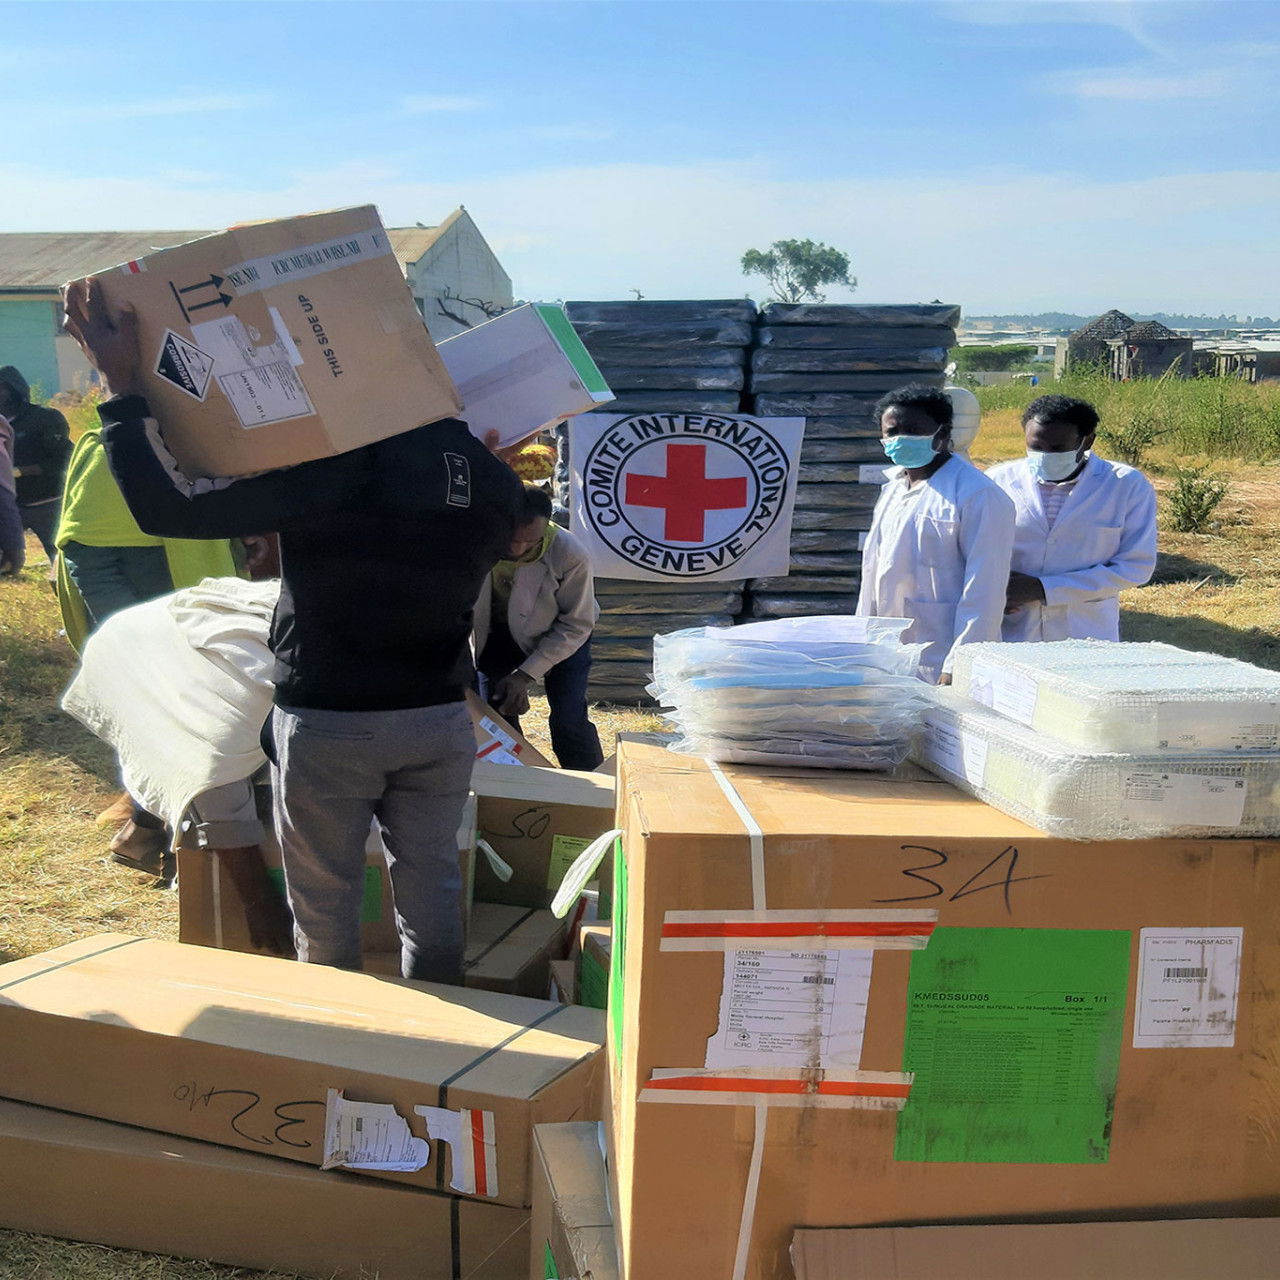 إثيوبيا: تناقص الإمدادات الطبية يعوق قدرة الكوادر الصحية على مساعدة  المحتاجين | اللجنة الدولية للصليب الأحمر